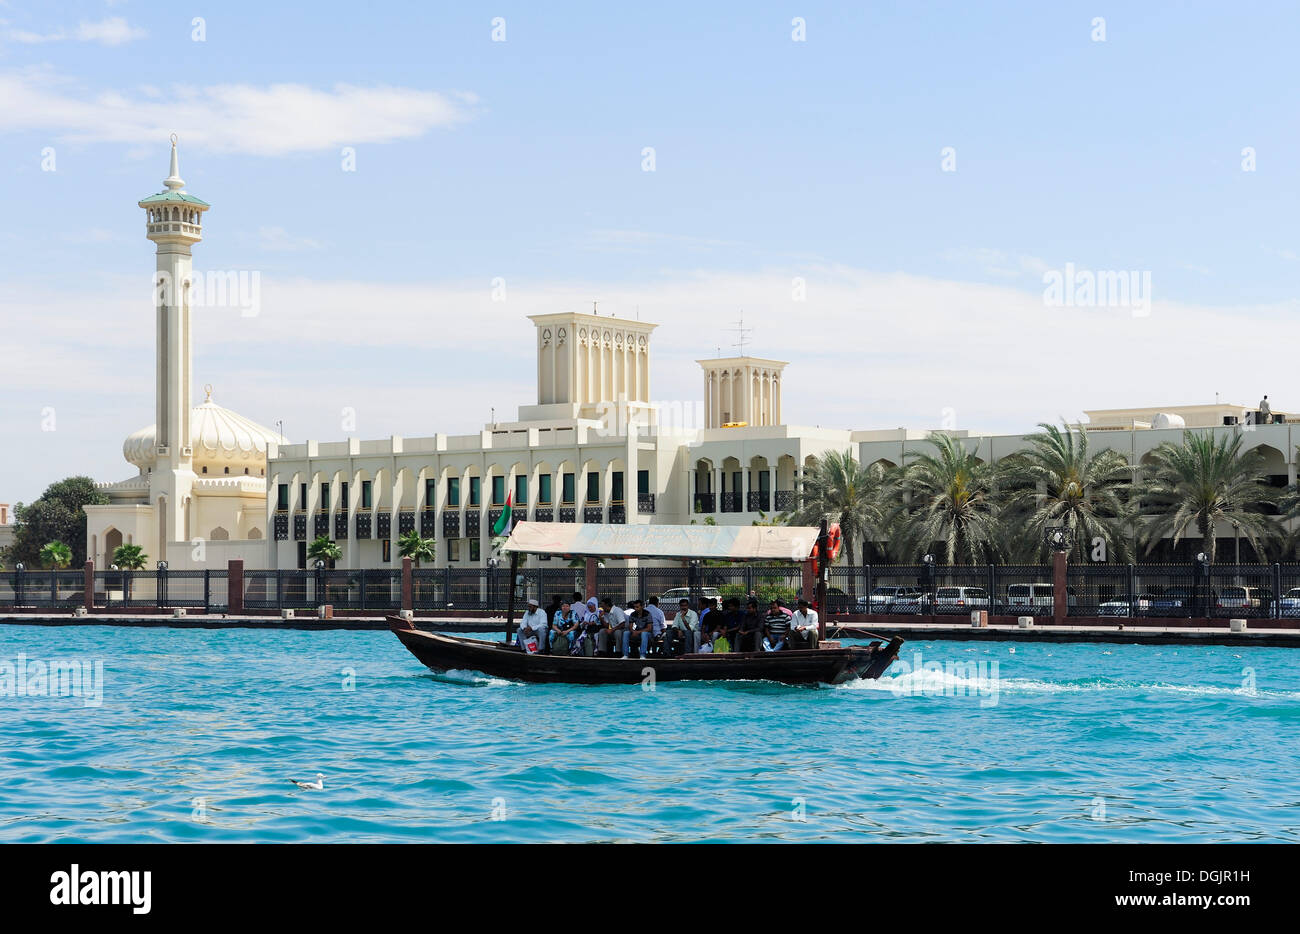 Dubai Grand Mosque, Abra, water taxi, at the Dubai Creek, Dubai, United Arab Emirates, Middle East Stock Photo